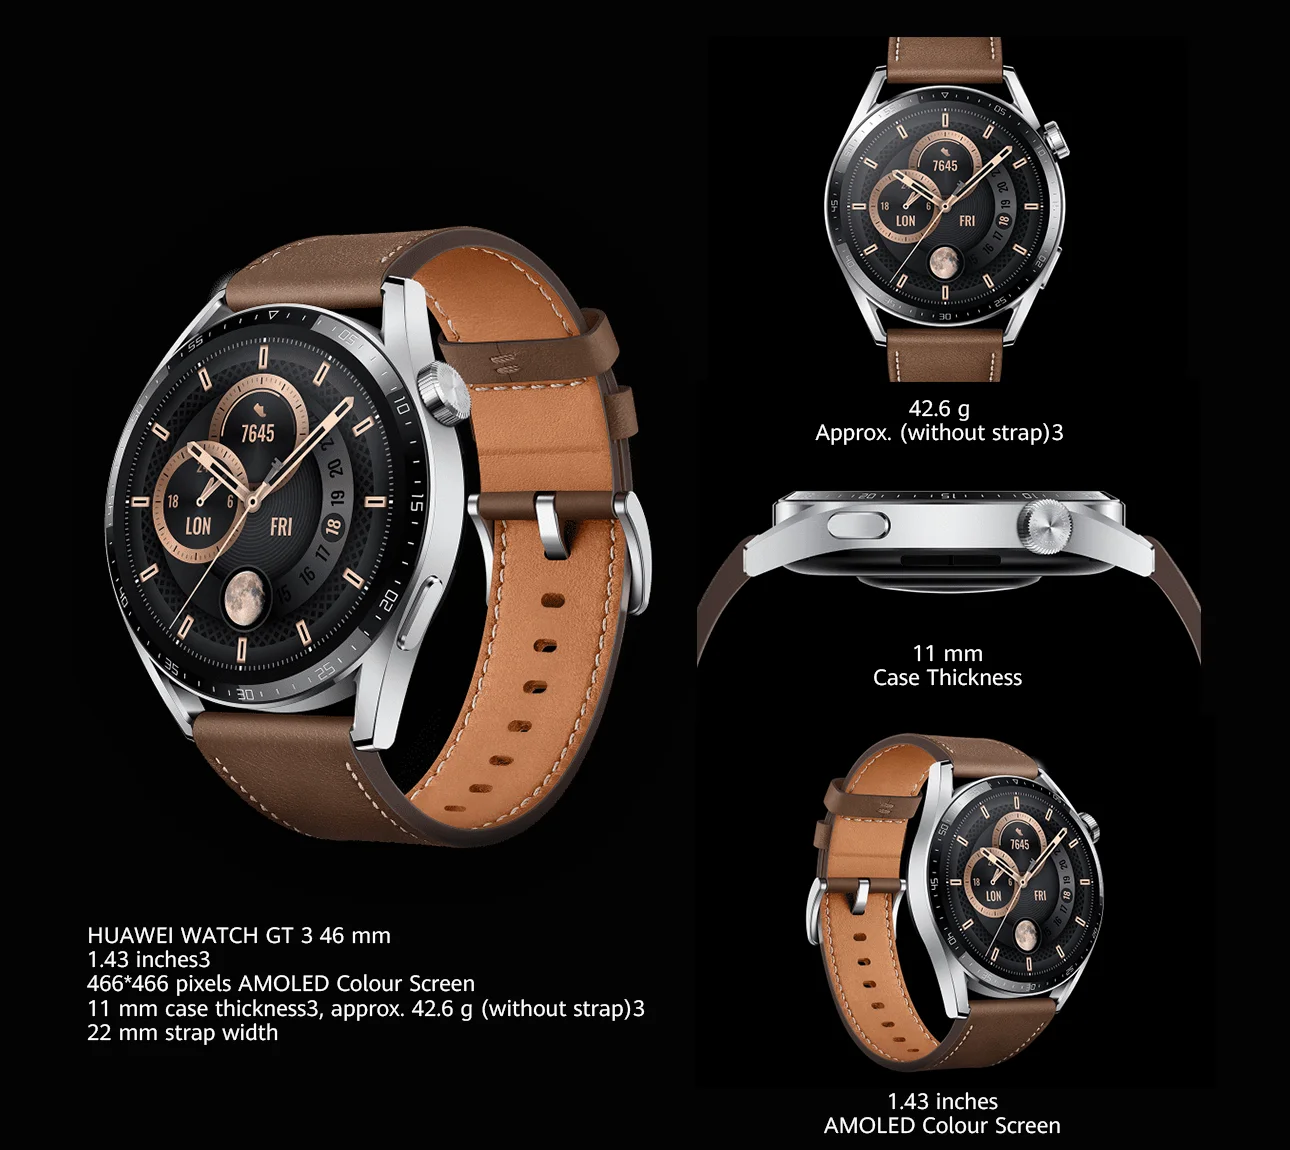 HUAWEI WATCH GT 3 Smart Watch